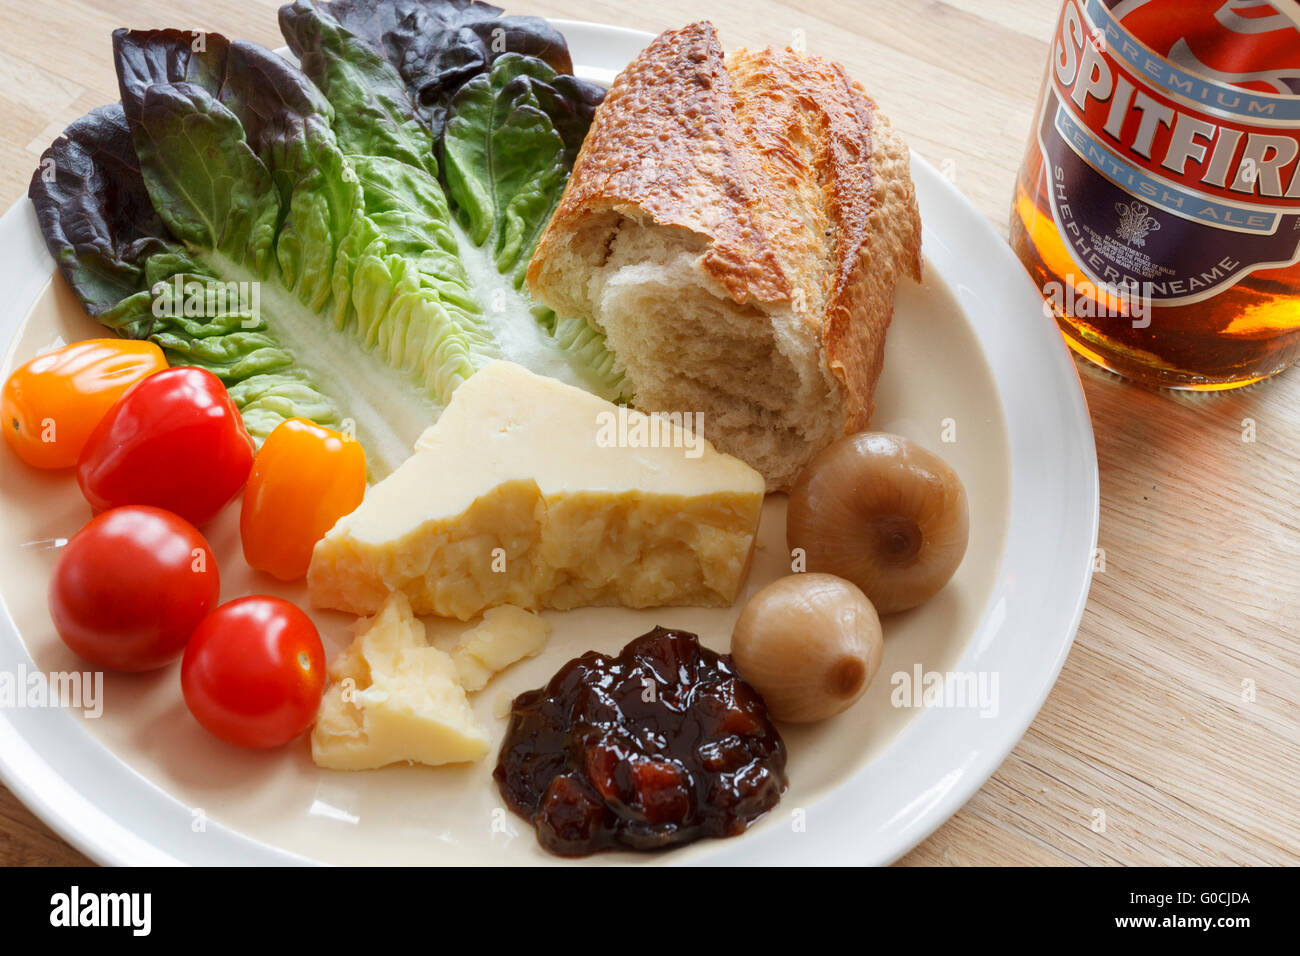 Inglese tradizionale pranzo plowmans consistente di pane, formaggi, sottaceti e birra Foto Stock